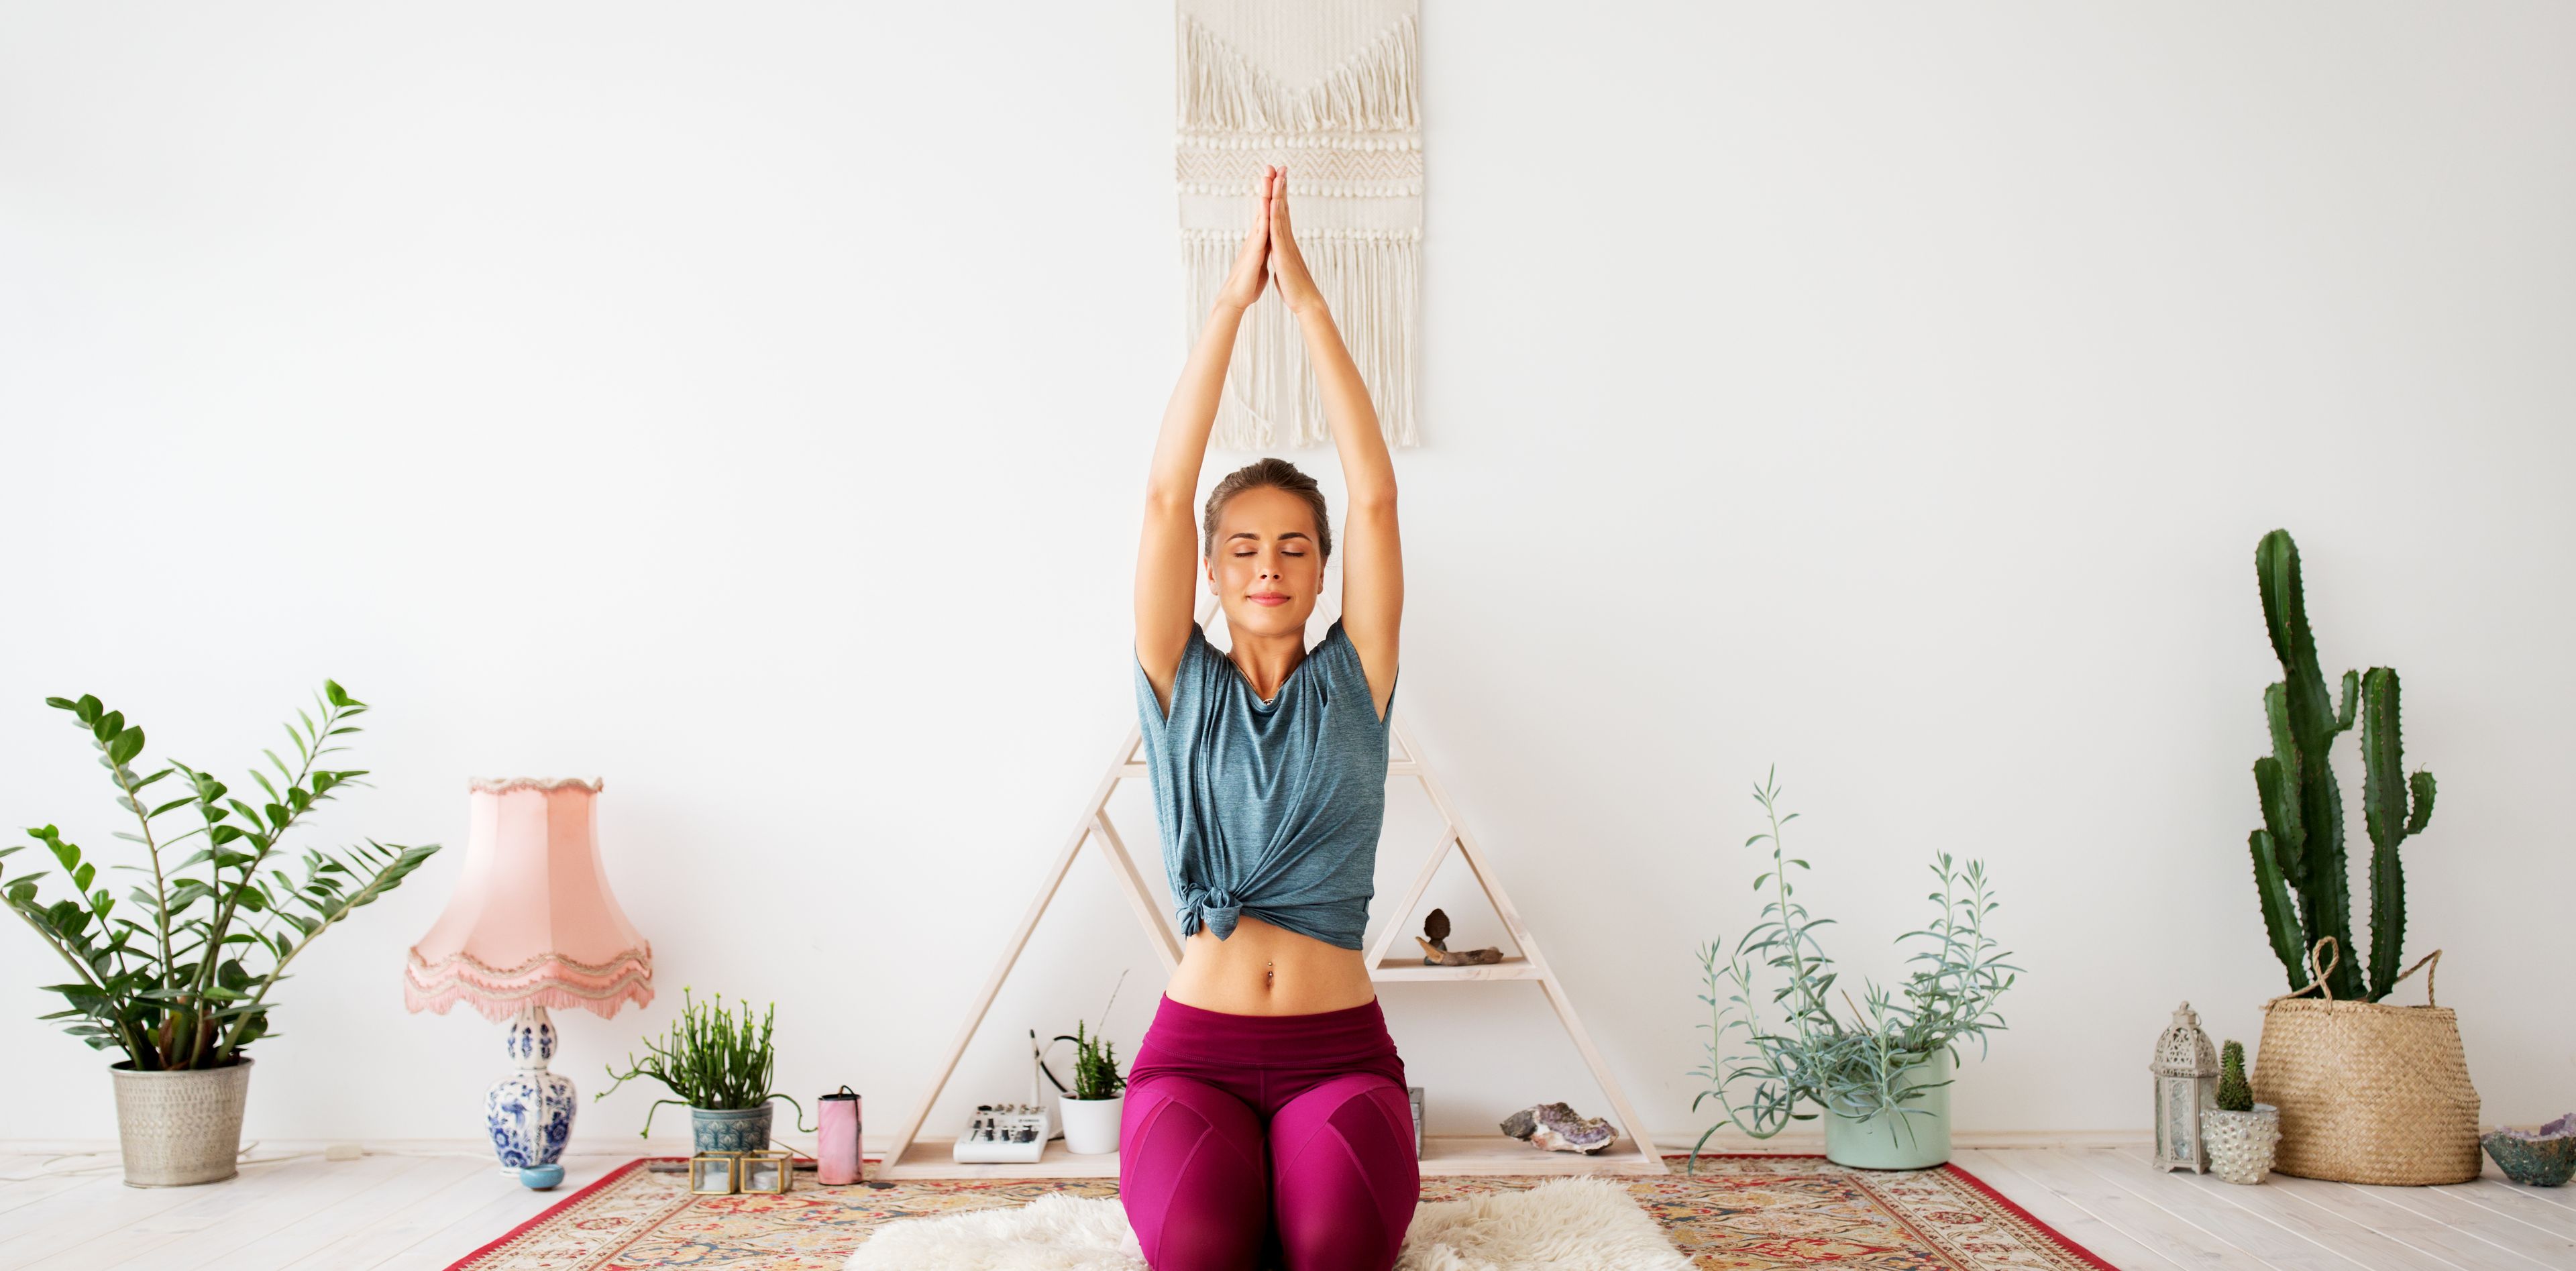 Frau in Yogastellung in einem im Boho-Stil eingerichteten Raum